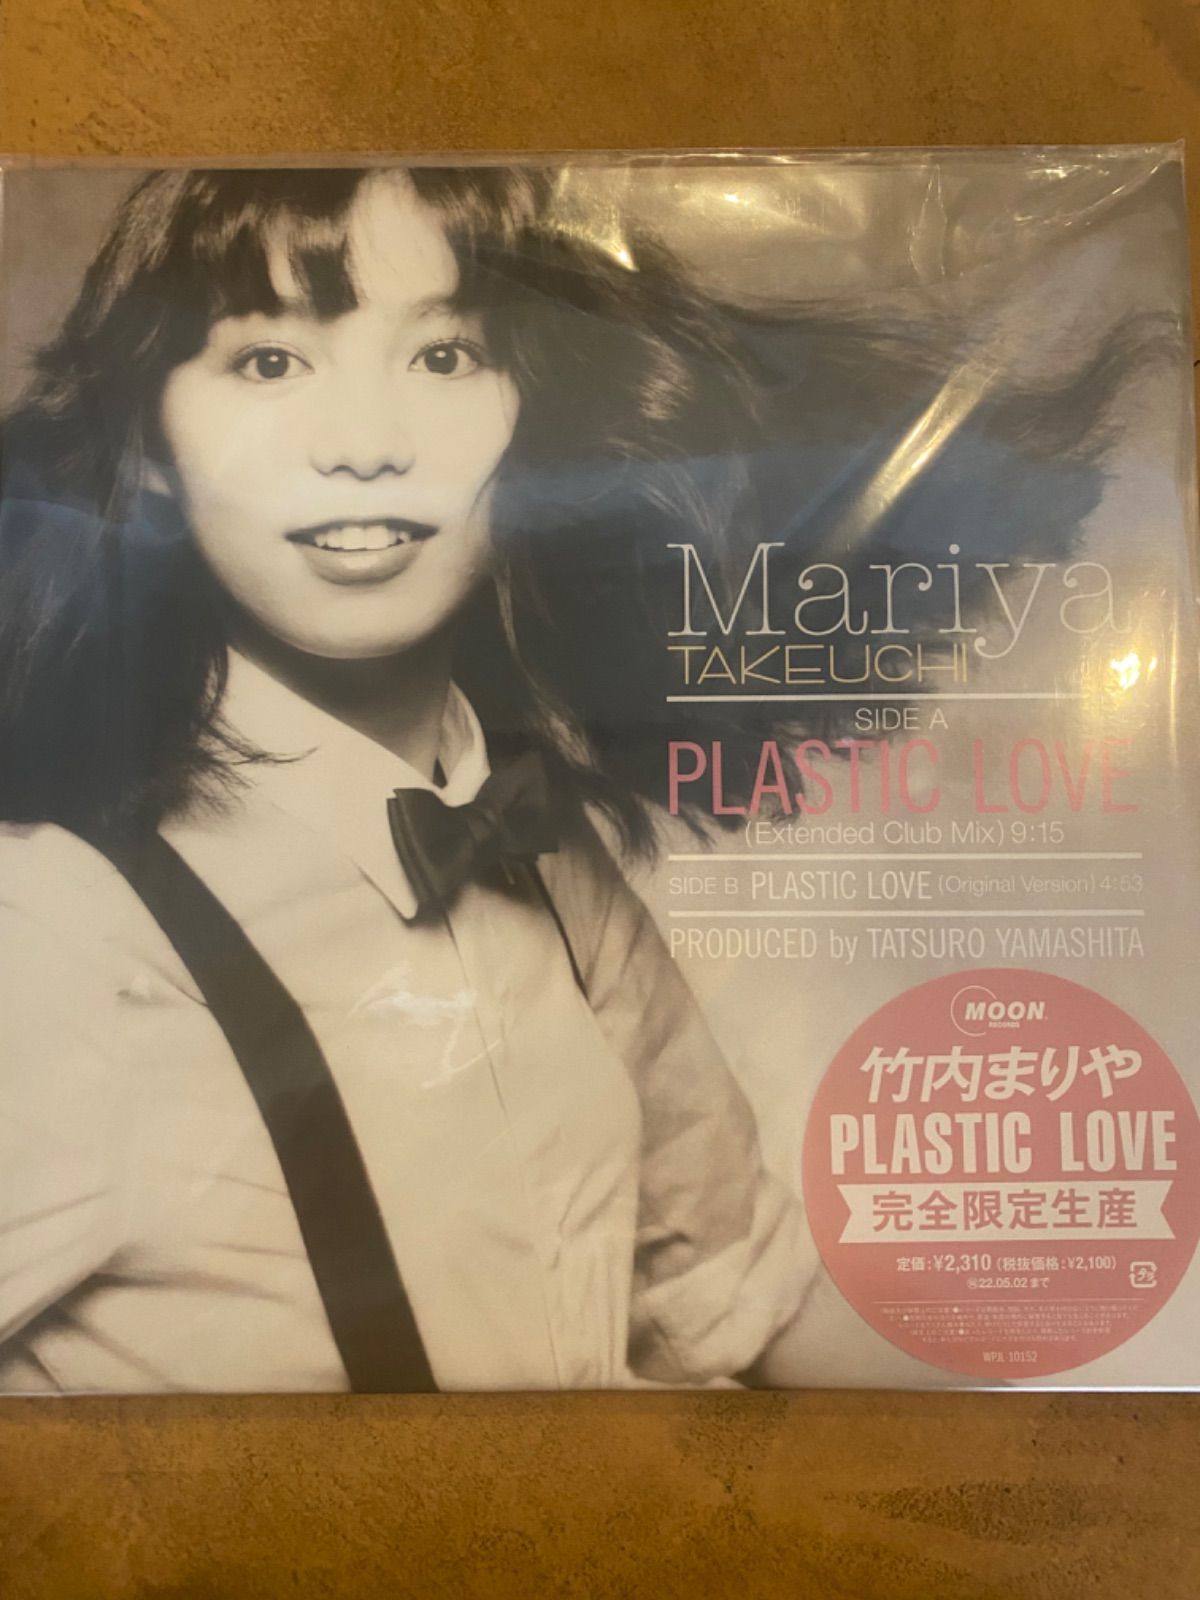 山下達郎竹内まりや PLASTIC LOVE 12 - 邦楽